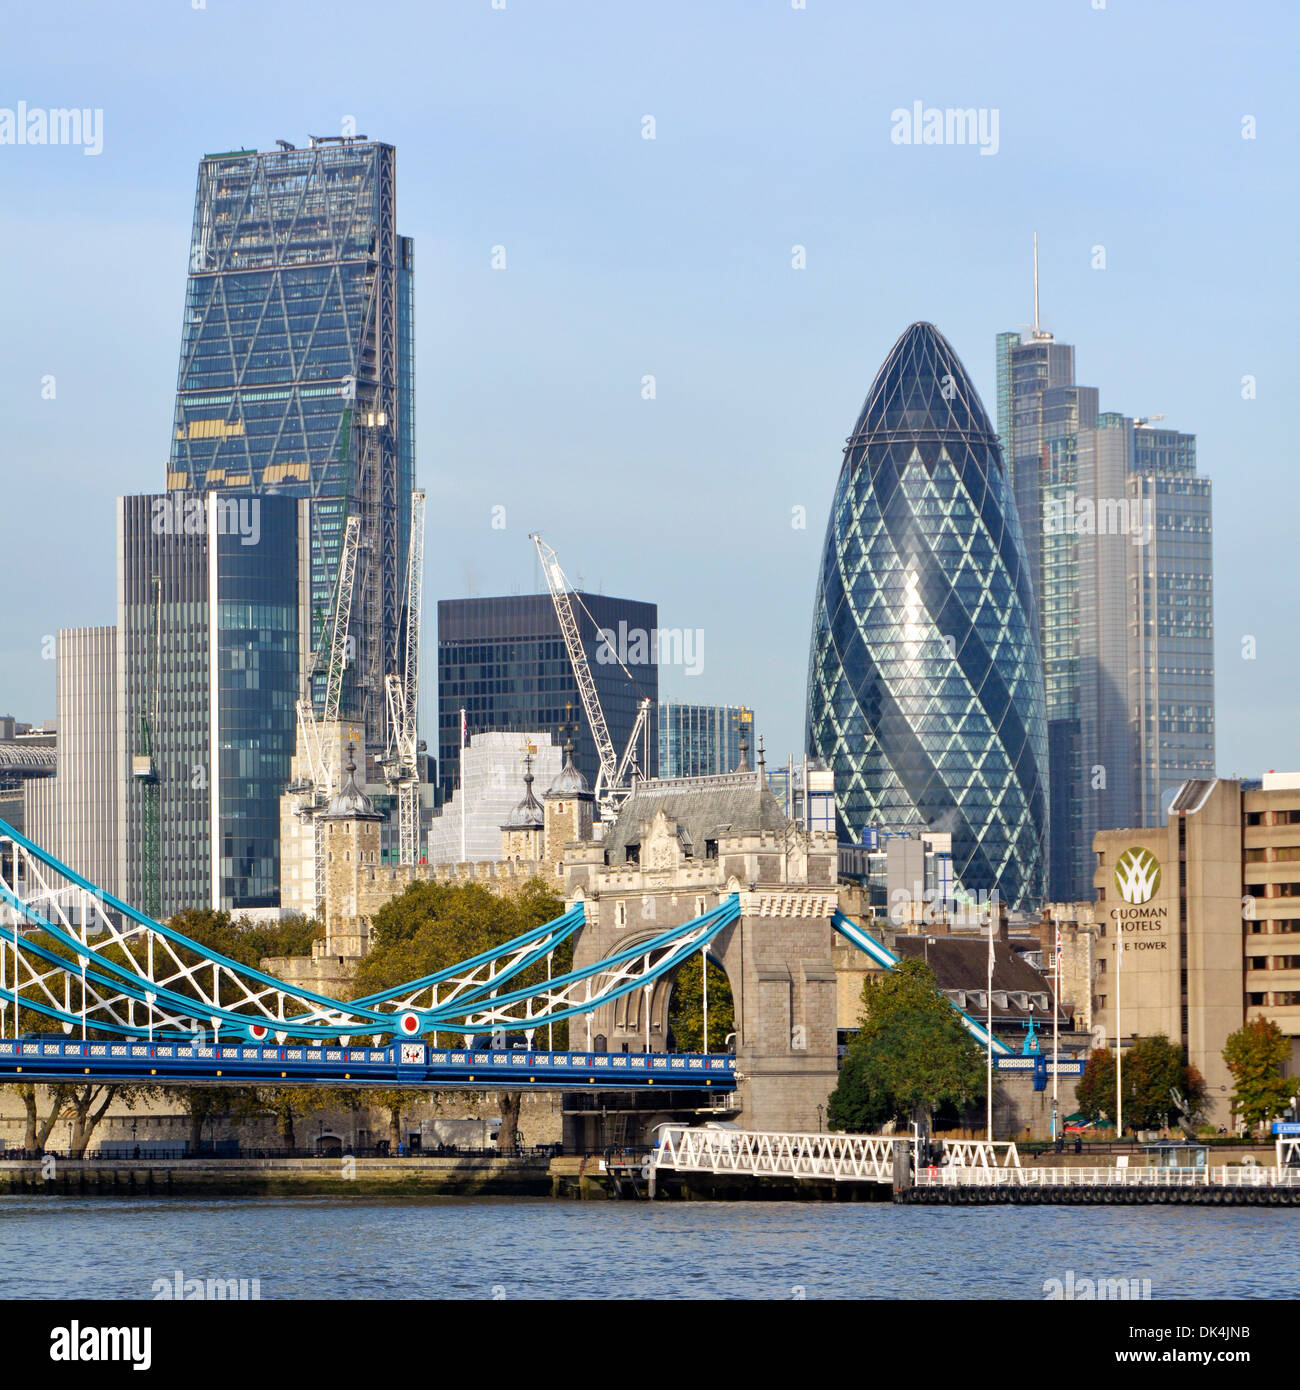 Skyline von London mit neuem Cheesegrater Wolkenkratzer-Wahrzeichen, das sich über dem Gherkin-Gebäude im Square Mile Finanzviertel England UK erhebt Stockfoto